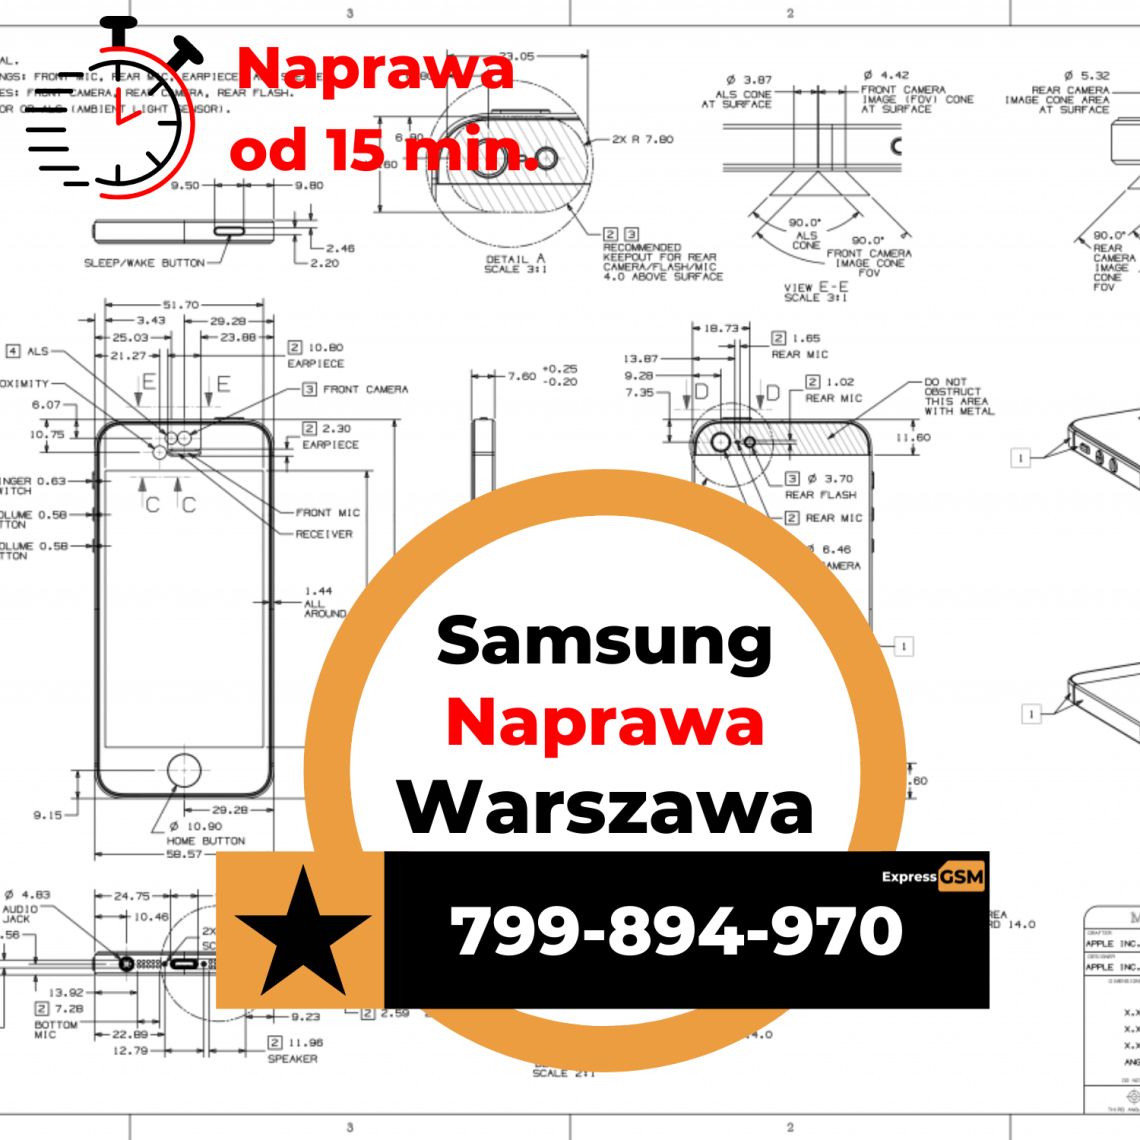 Samsung Naprawa Warszawa